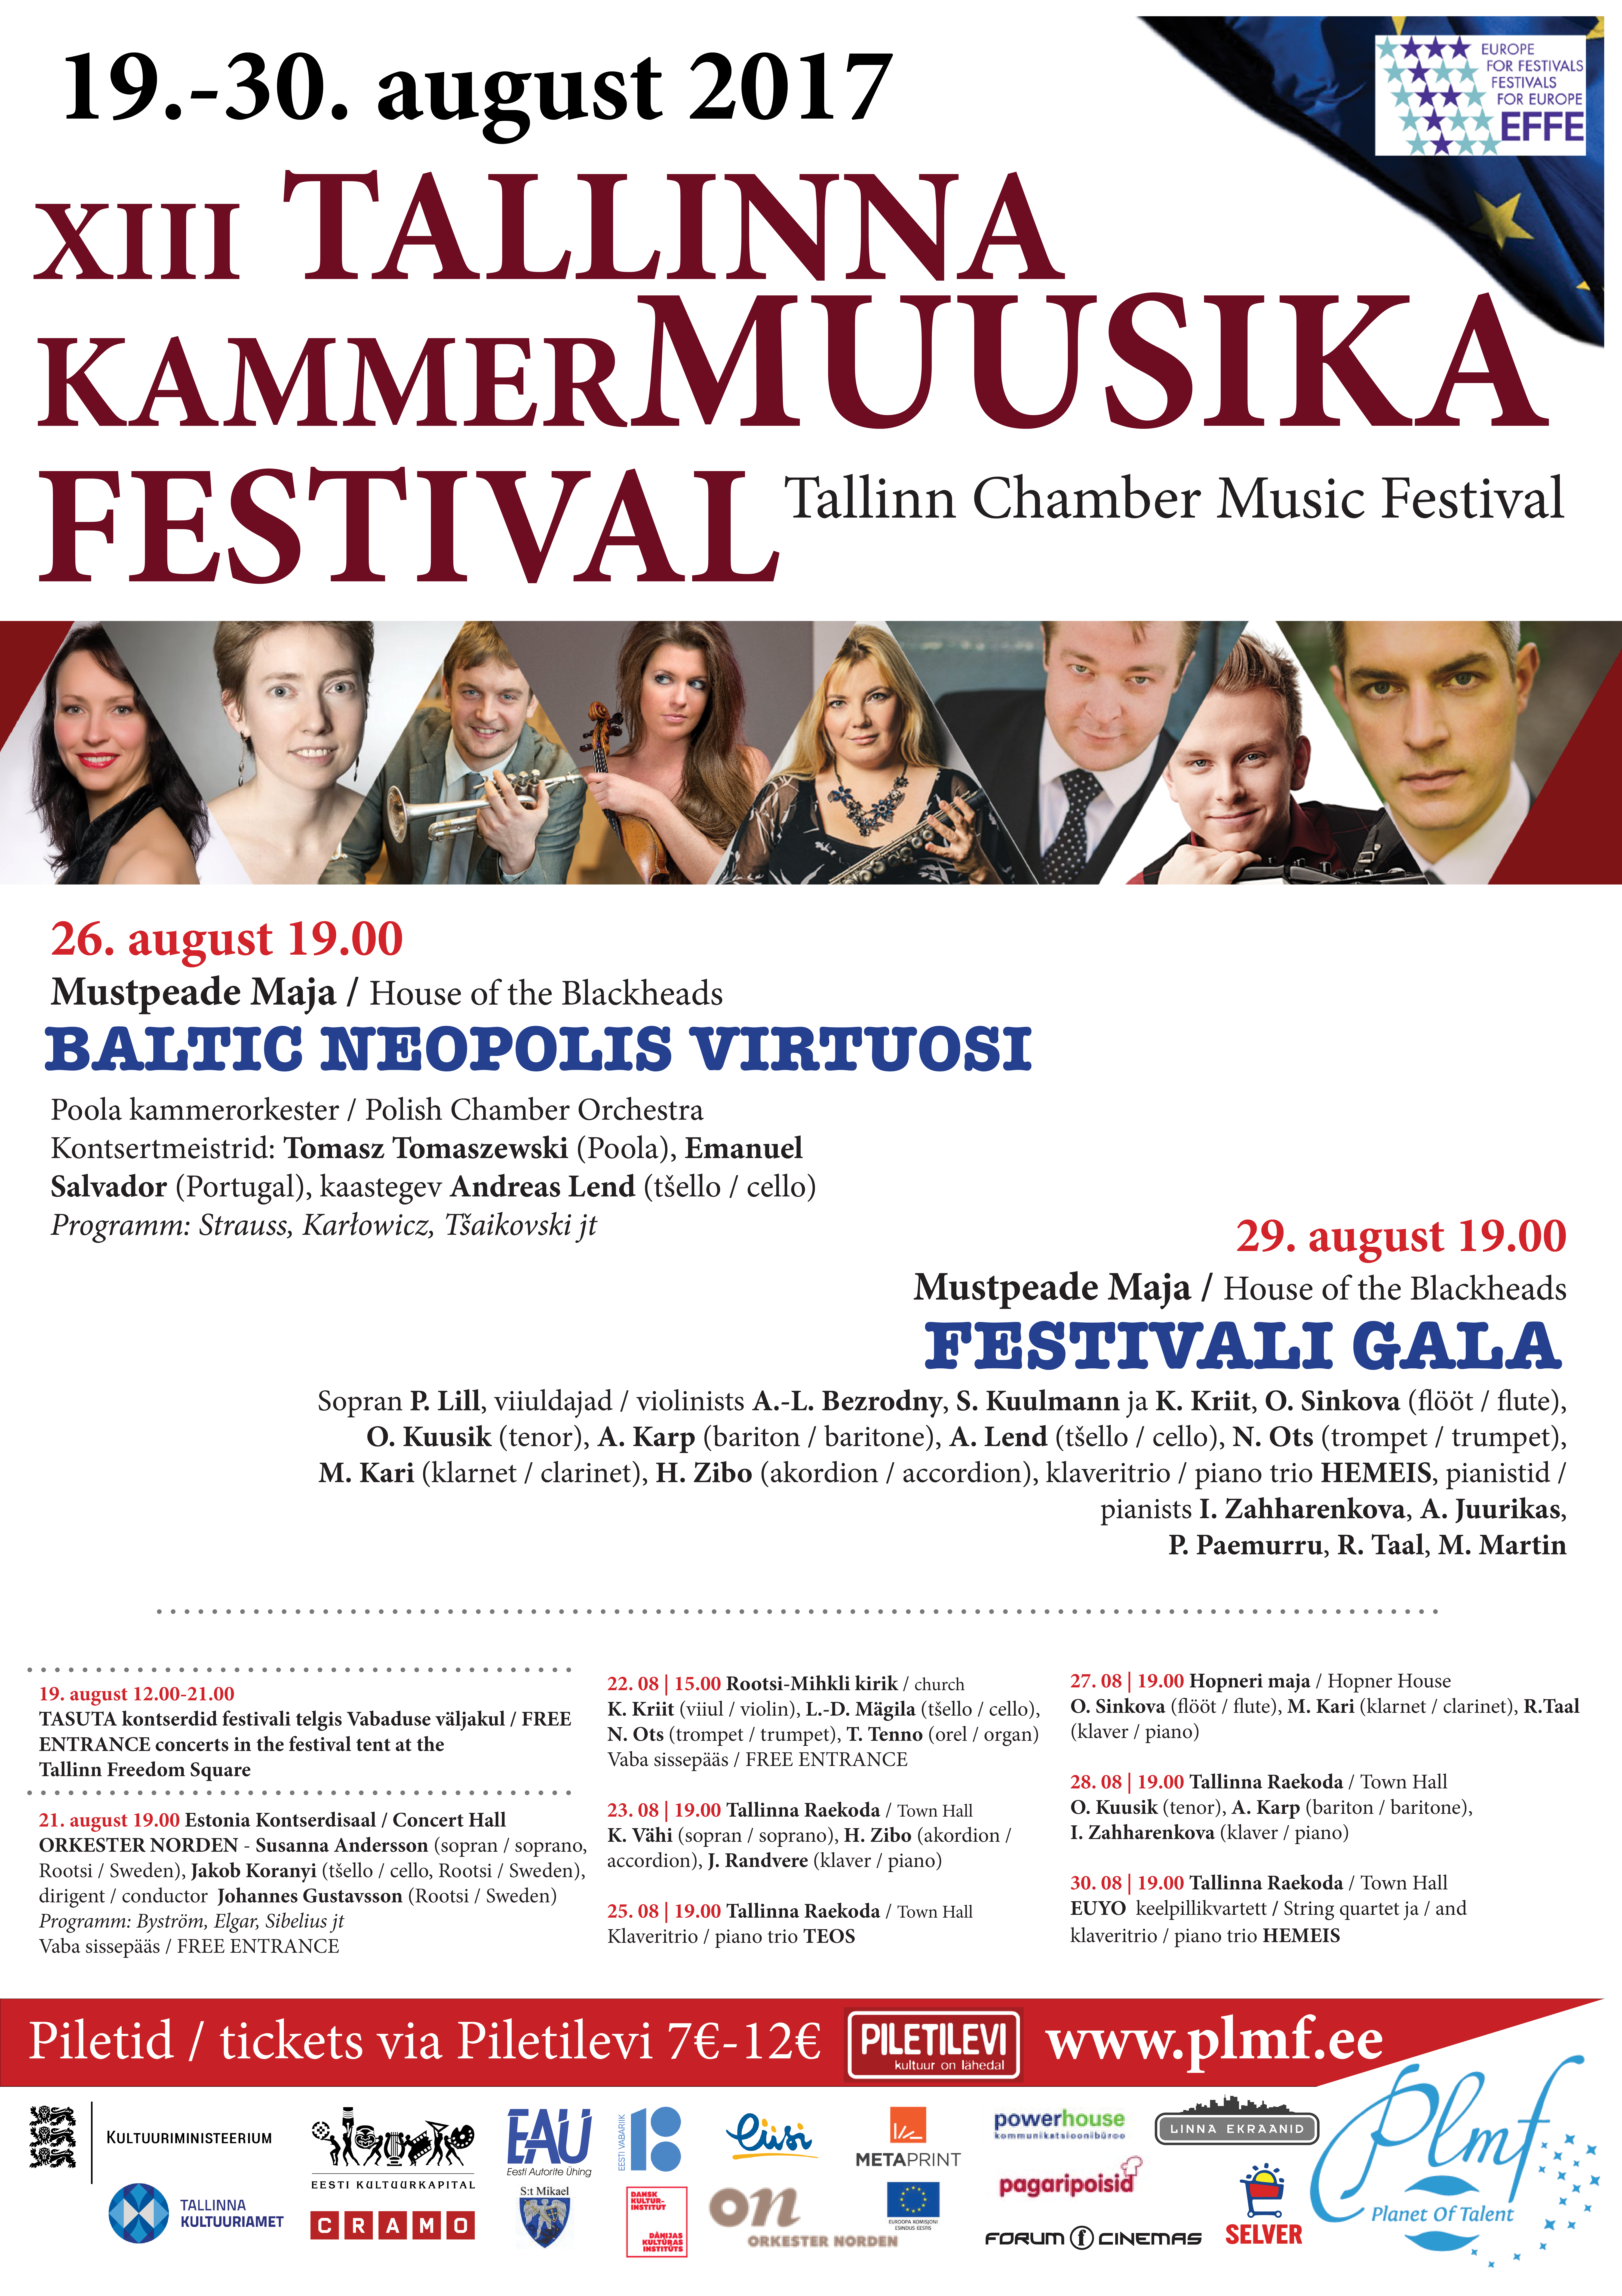 BALTIC NEOPOLIS VIRTUOSI / Tallinna Kammermuusika Festival